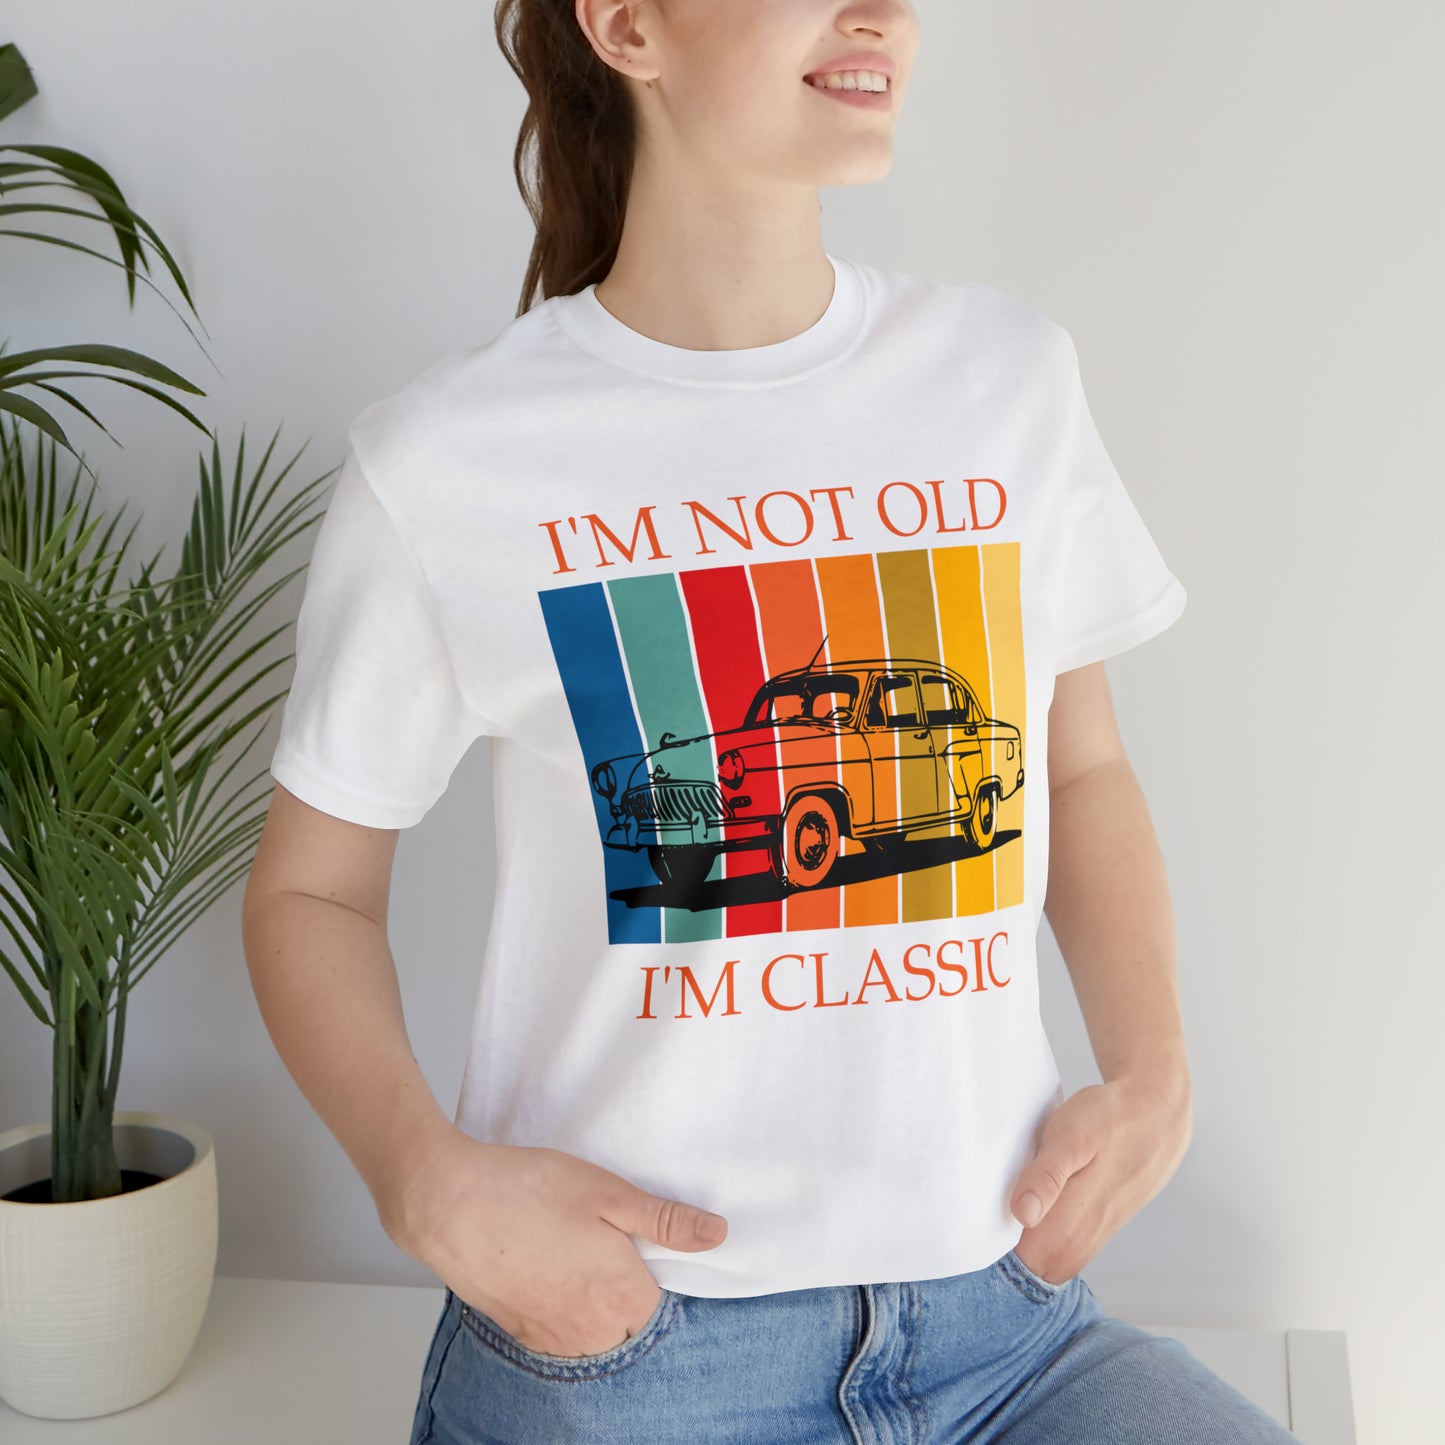 I'm Not Old, I'm Classic T-Shirt, Classic Shirt, I Am Not Old Shirt, Birthday Gift, Car Classic, Old Car